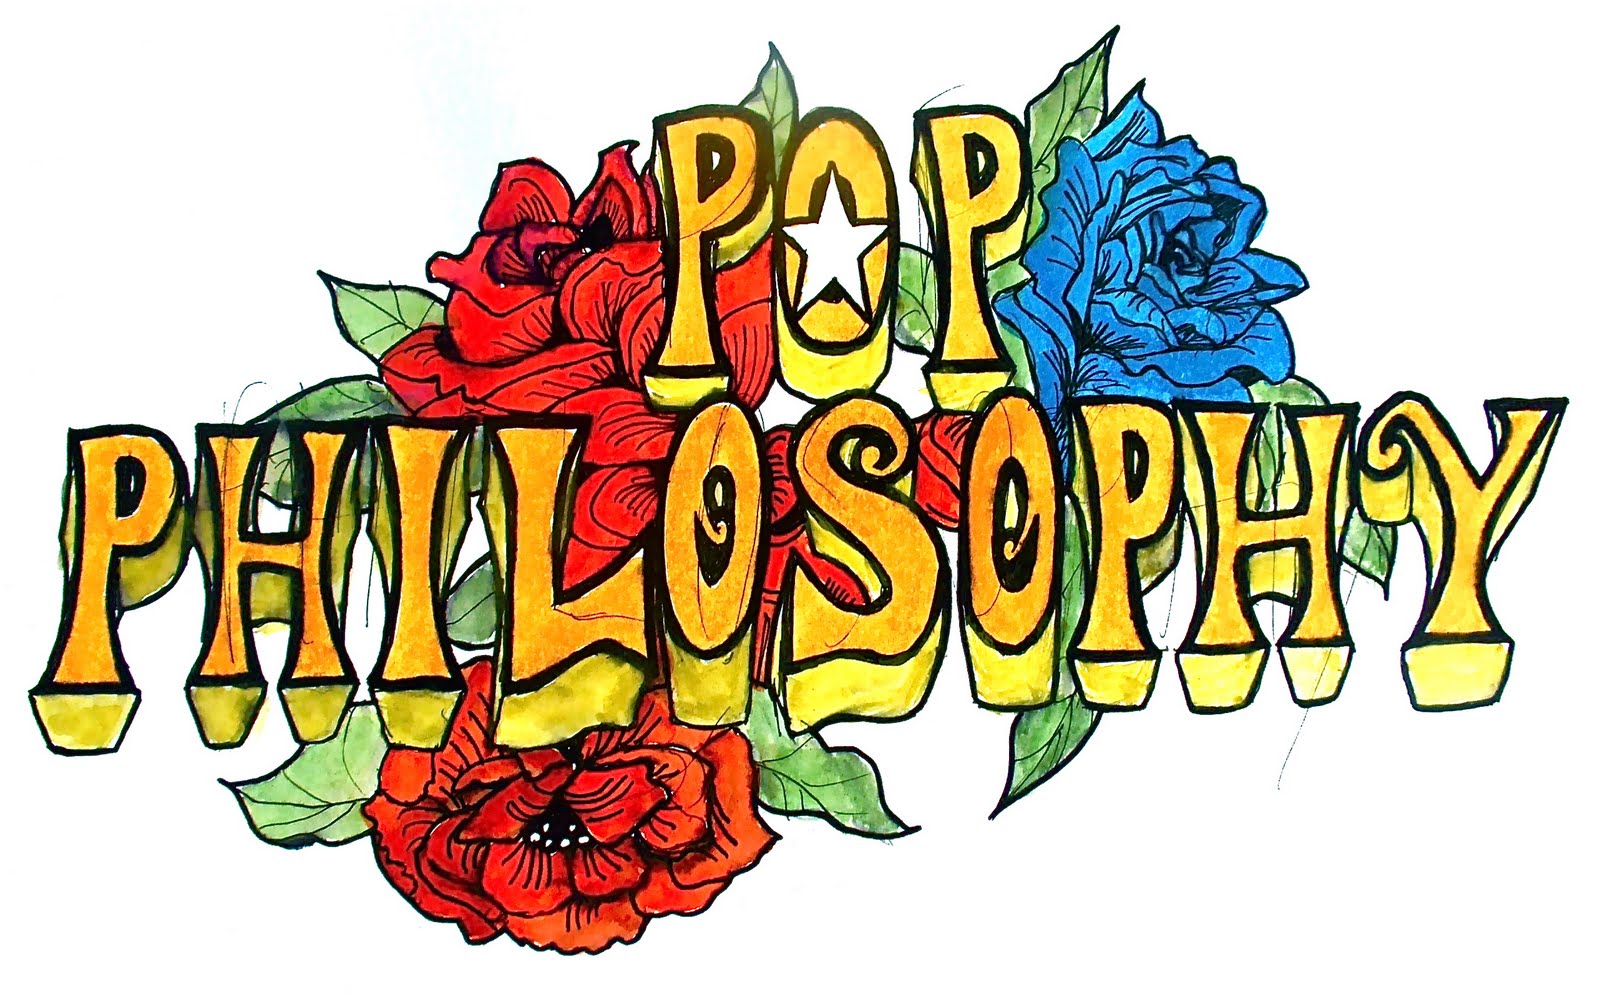 POP PHILOSOPHY